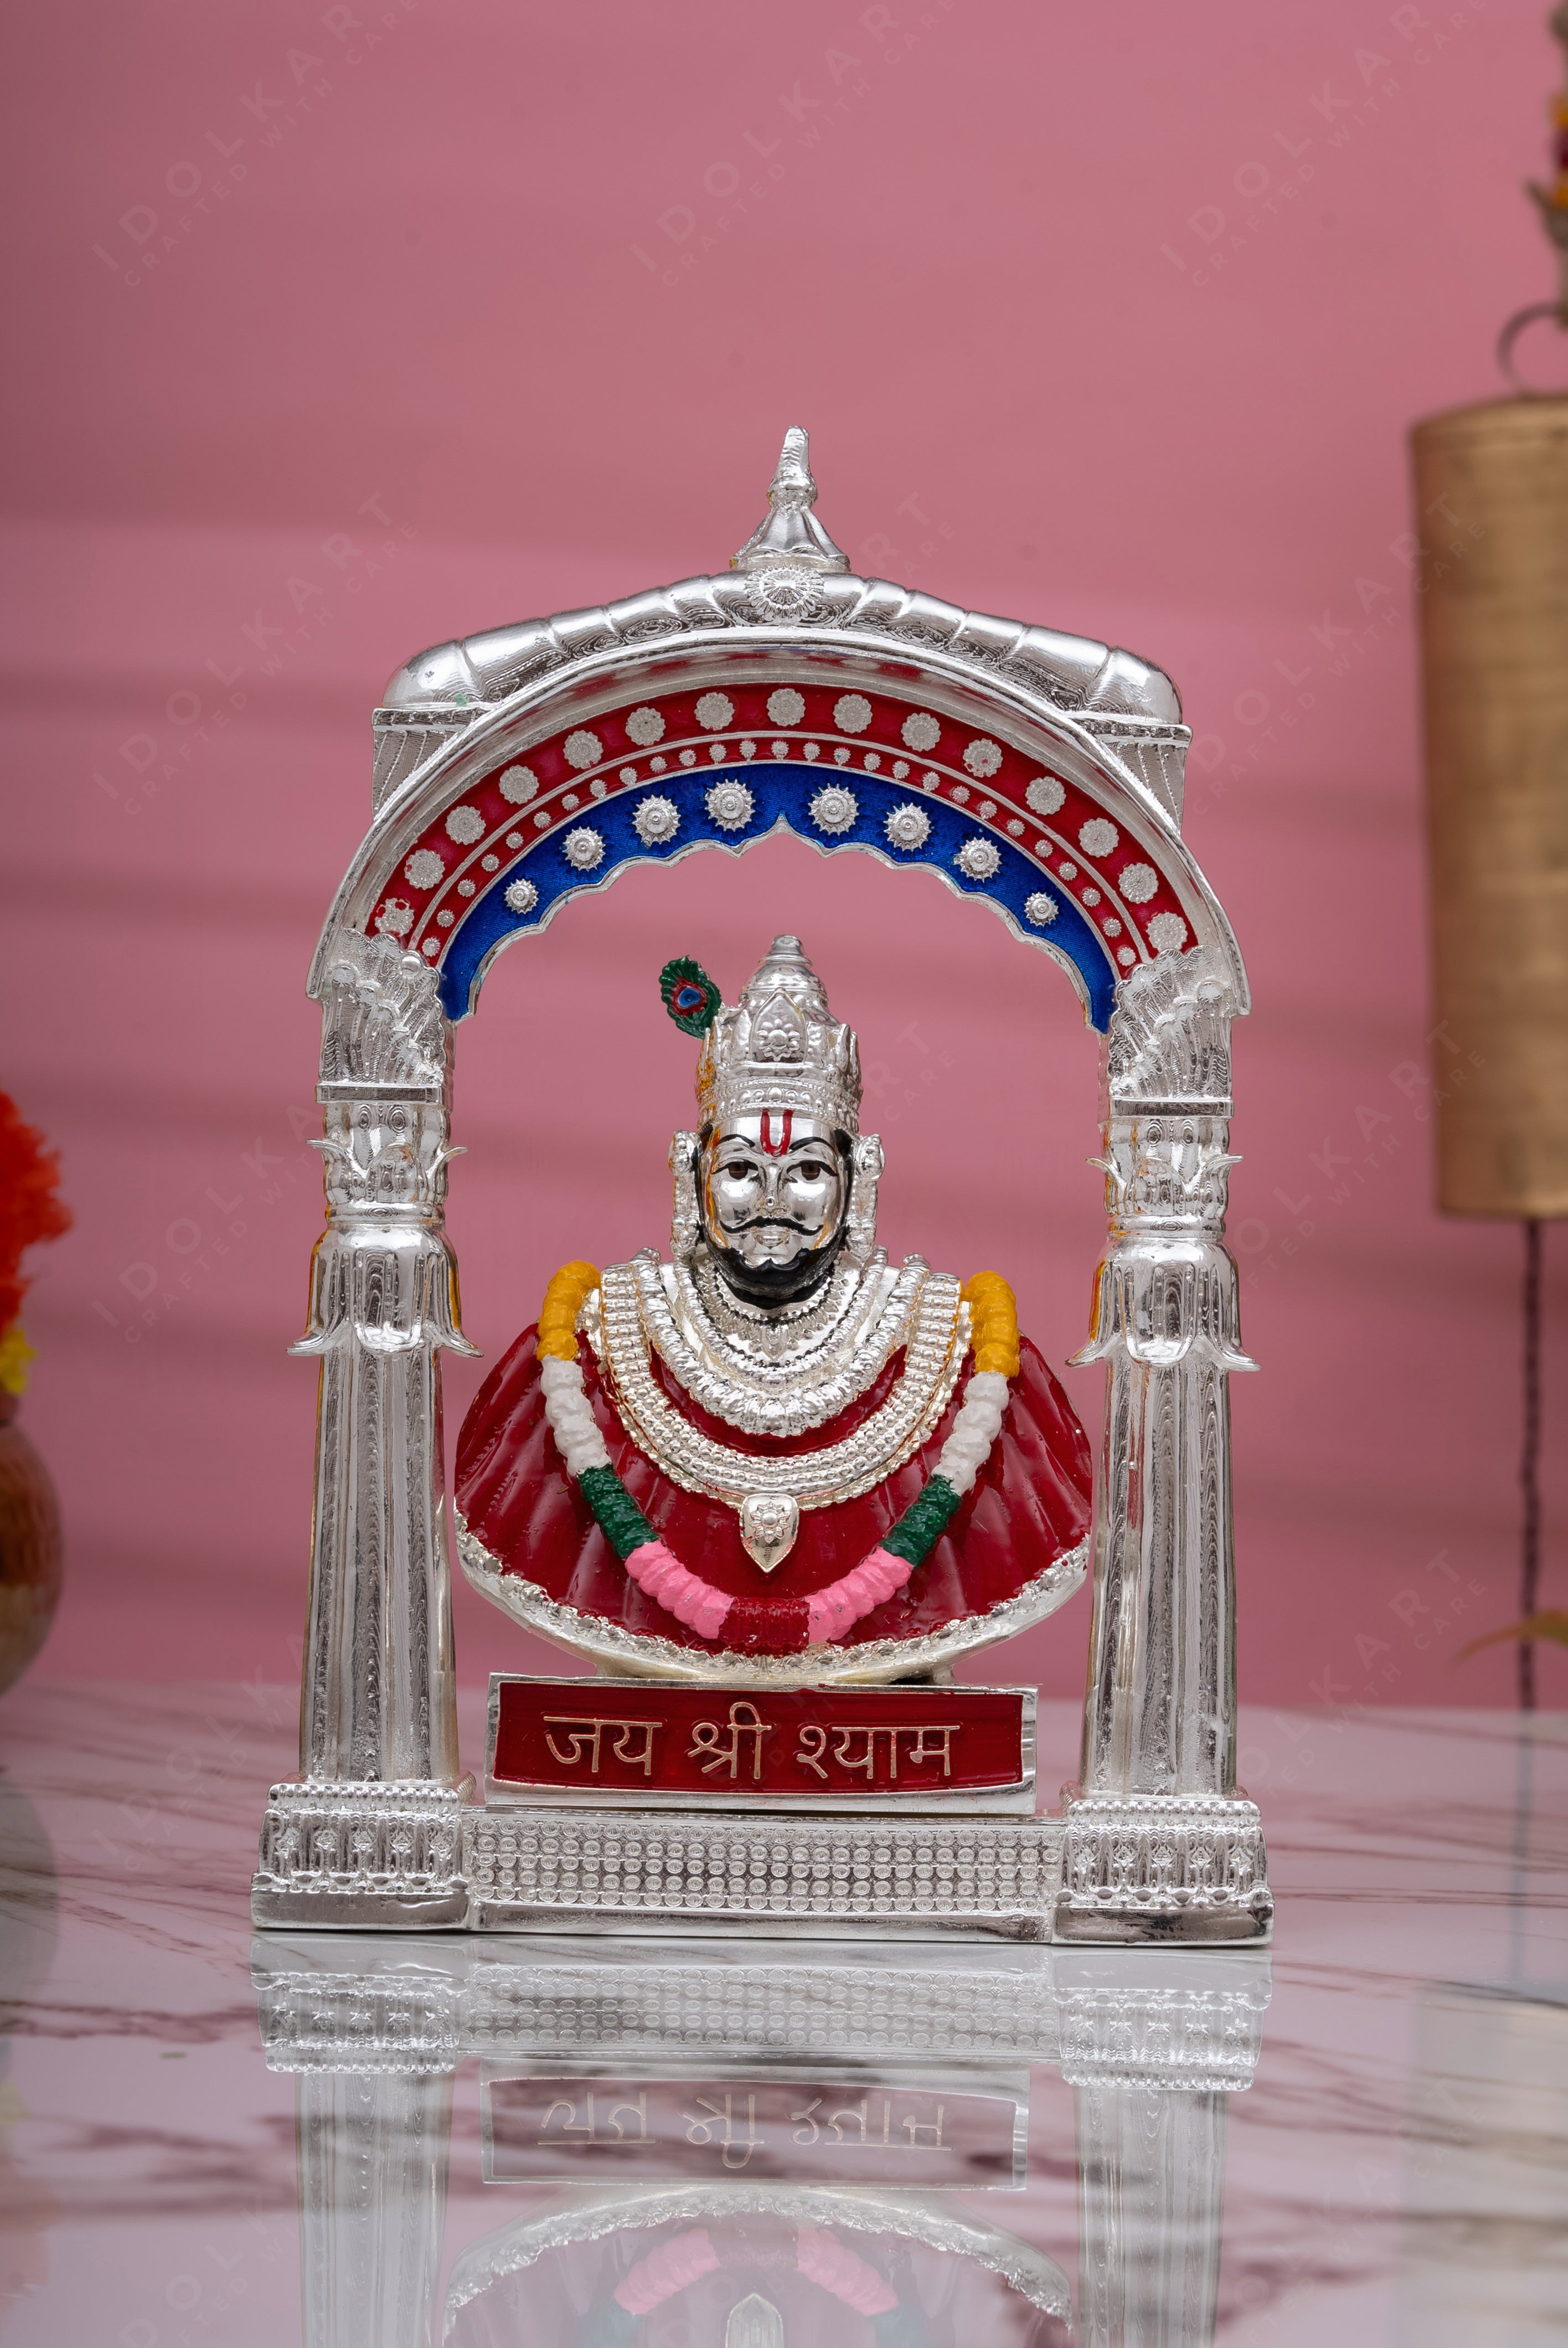 Pure Gold Coated Khatu Shyam Murti | Khatu Shyam ji Idol for Car Dashboard |Shyam Baba Murti Idol for Peace & Positivity |Khatu Shyam Ji Ki Murti For Home